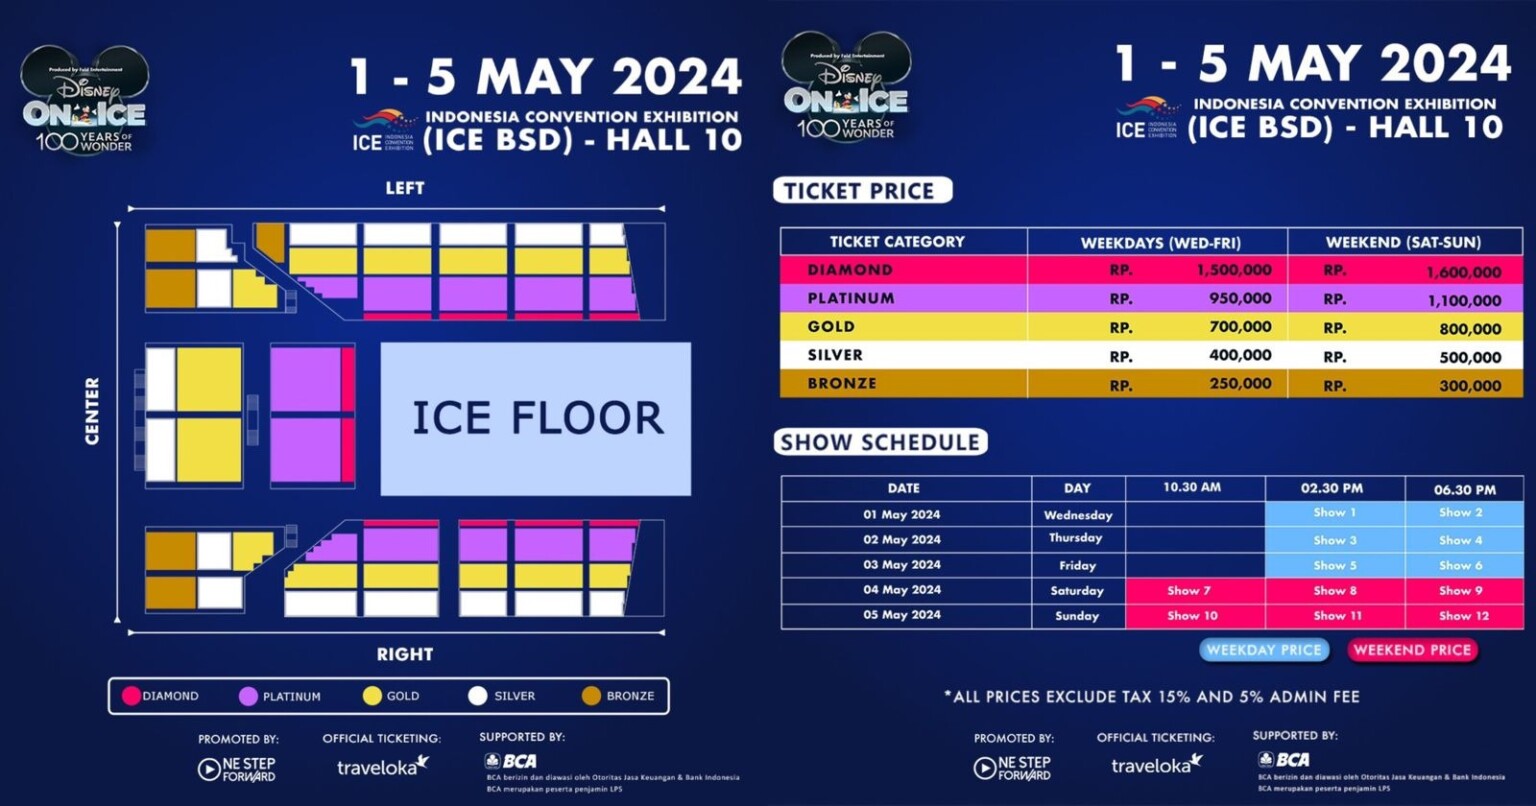 Hadir Kembali, Ini Cara Beli Tiket Disney On Ice Jakarta 2024 Asumsi